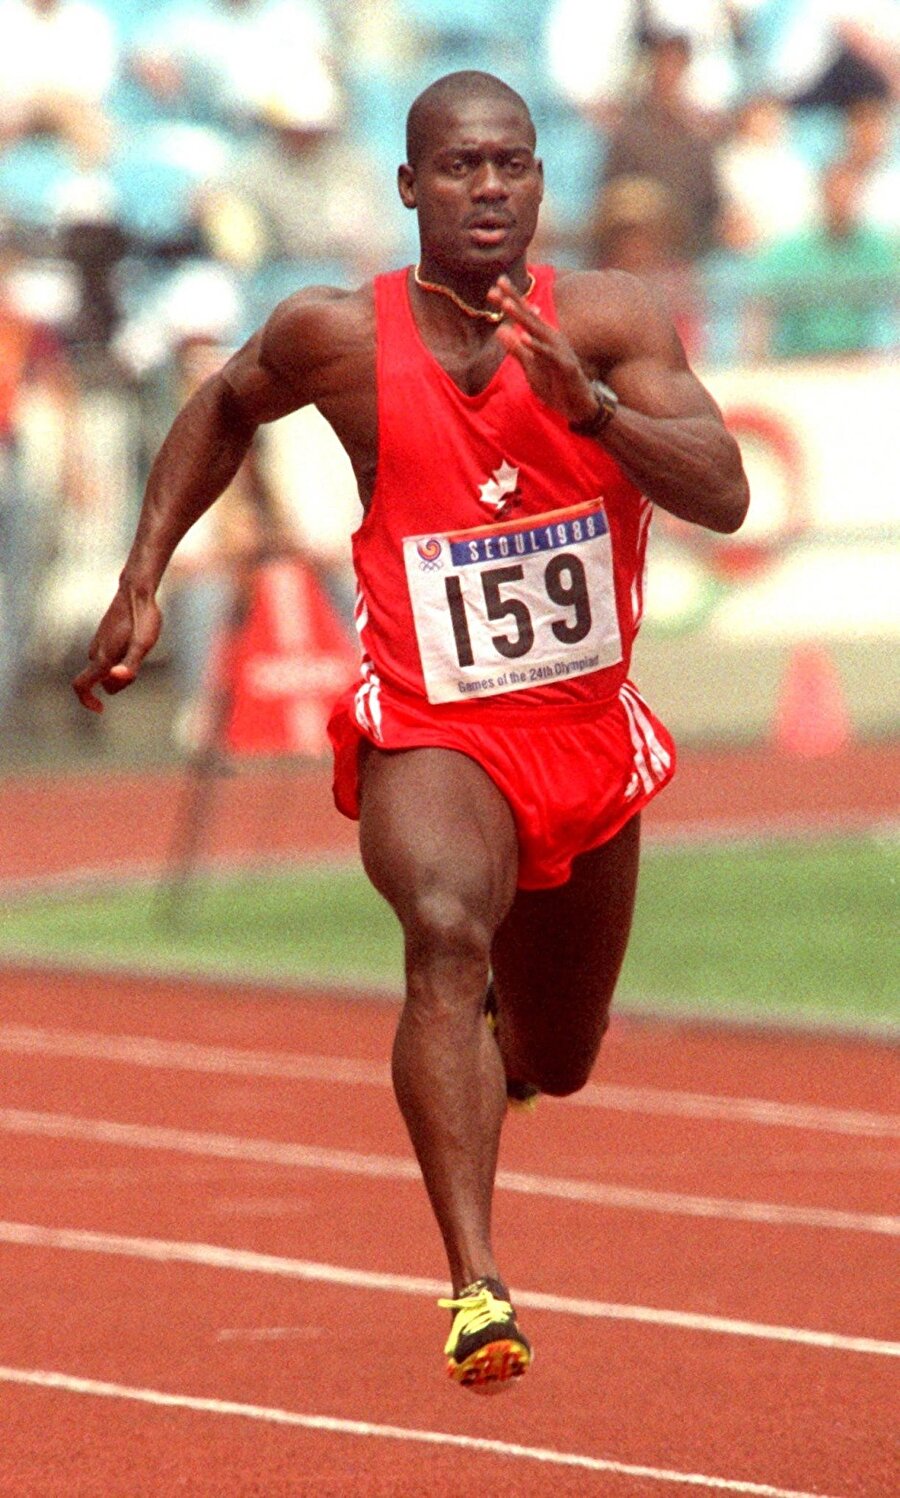 Ben Johnson

                                    
                                    
                                    Olimpiyat Oyunları'nın en büyük doping skandalı olarak gösterilen olaya Ben Johnson'un adı karıştı. Atlet, 1988 Seul Olimpiyatları'nda 100 metrede altın madalya kazandı. Bu başarıdan kısa bir süre sonra doping testine giren Johnson'da yasaklı madde tespit edildi. Açılan mahkemede ise Johnson, 10 yıldır düzenli olarak doping kullandığını itiraf etti. Atletin, daha önce kazandığı madalyalar da elinden alındı.
                                
                                
                                